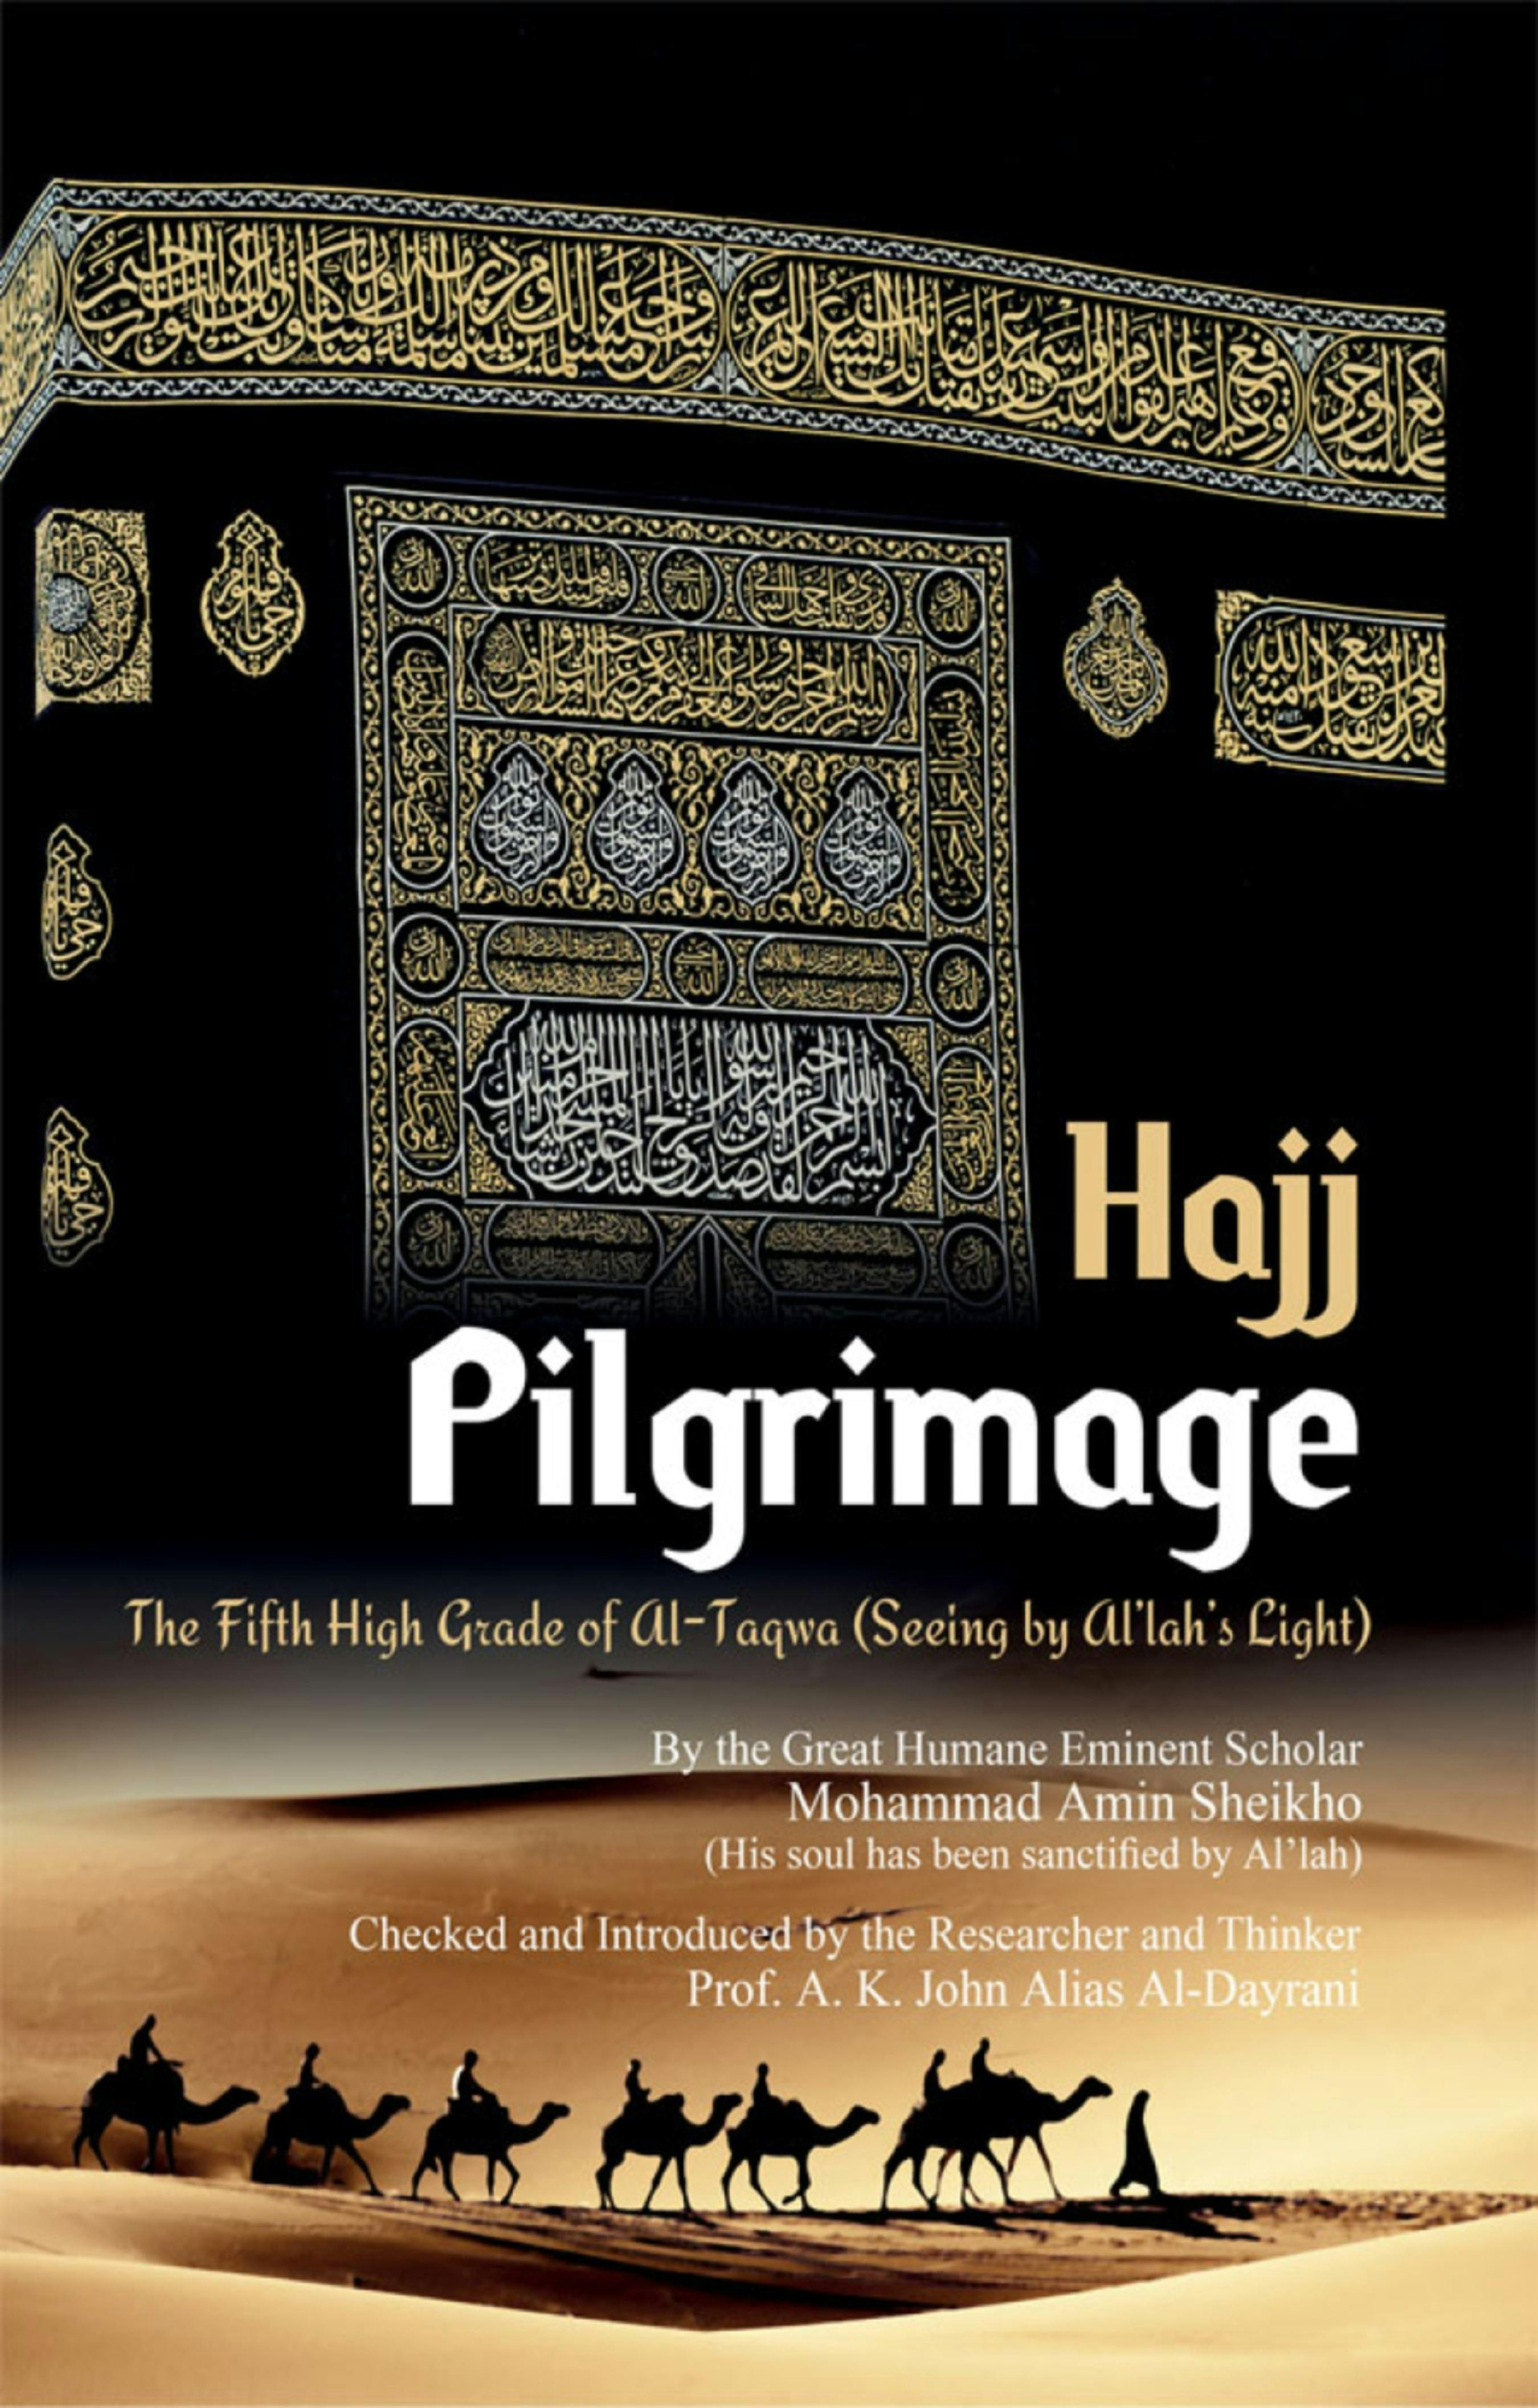 Pilgrimage "Hajj": The Fifth High Grade of Al-Taqwa - A. K. John Alias Al-Dayrani, Mohammad Amin Sheikho